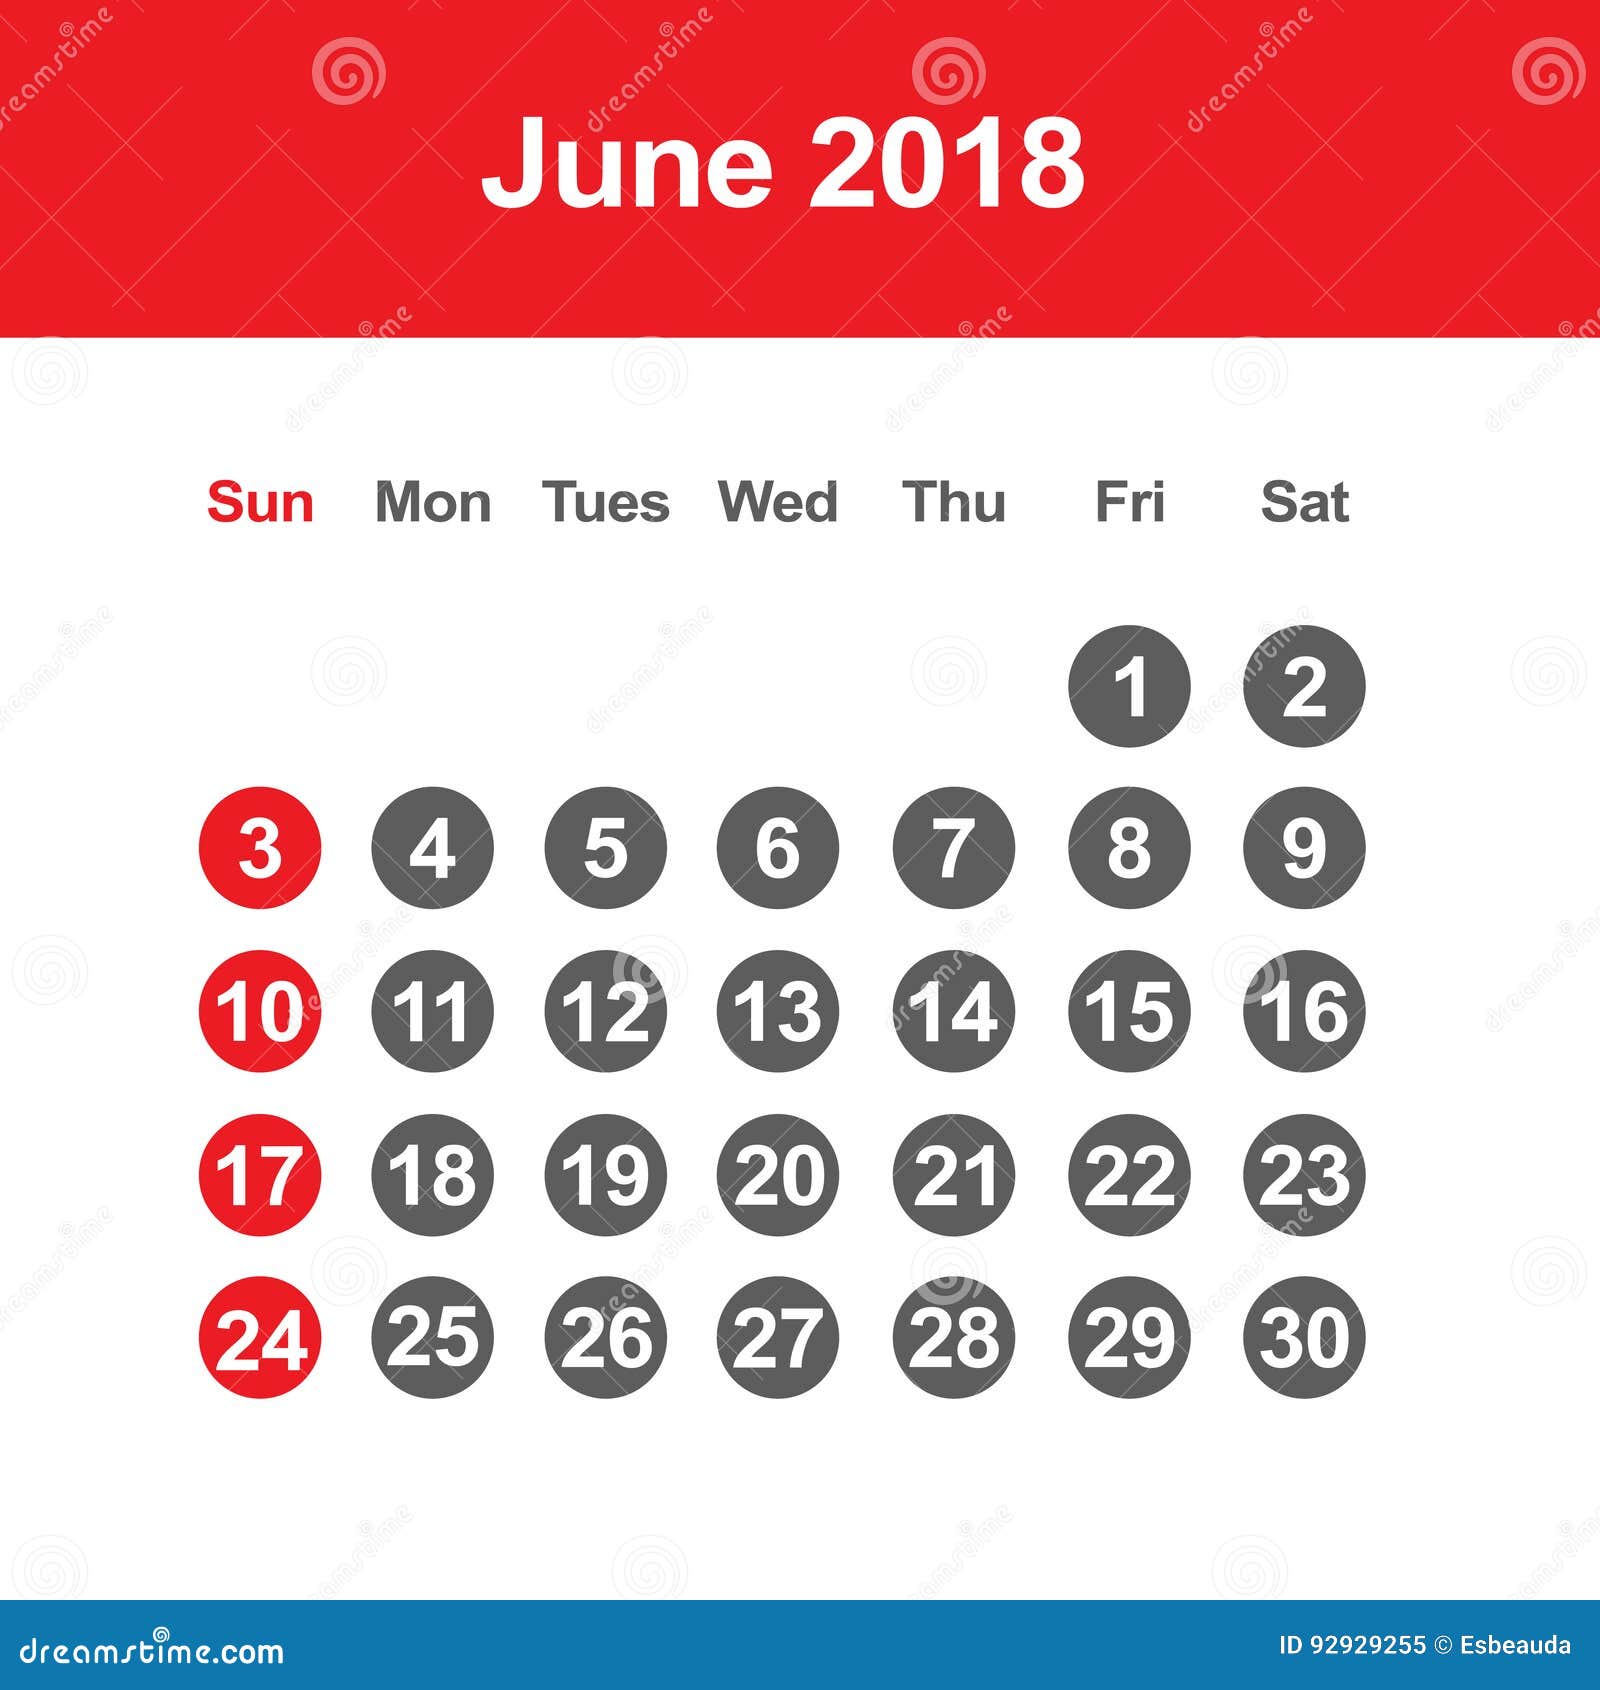 june-2018-calendar-printable-template-june-calendar-2018-june-2018